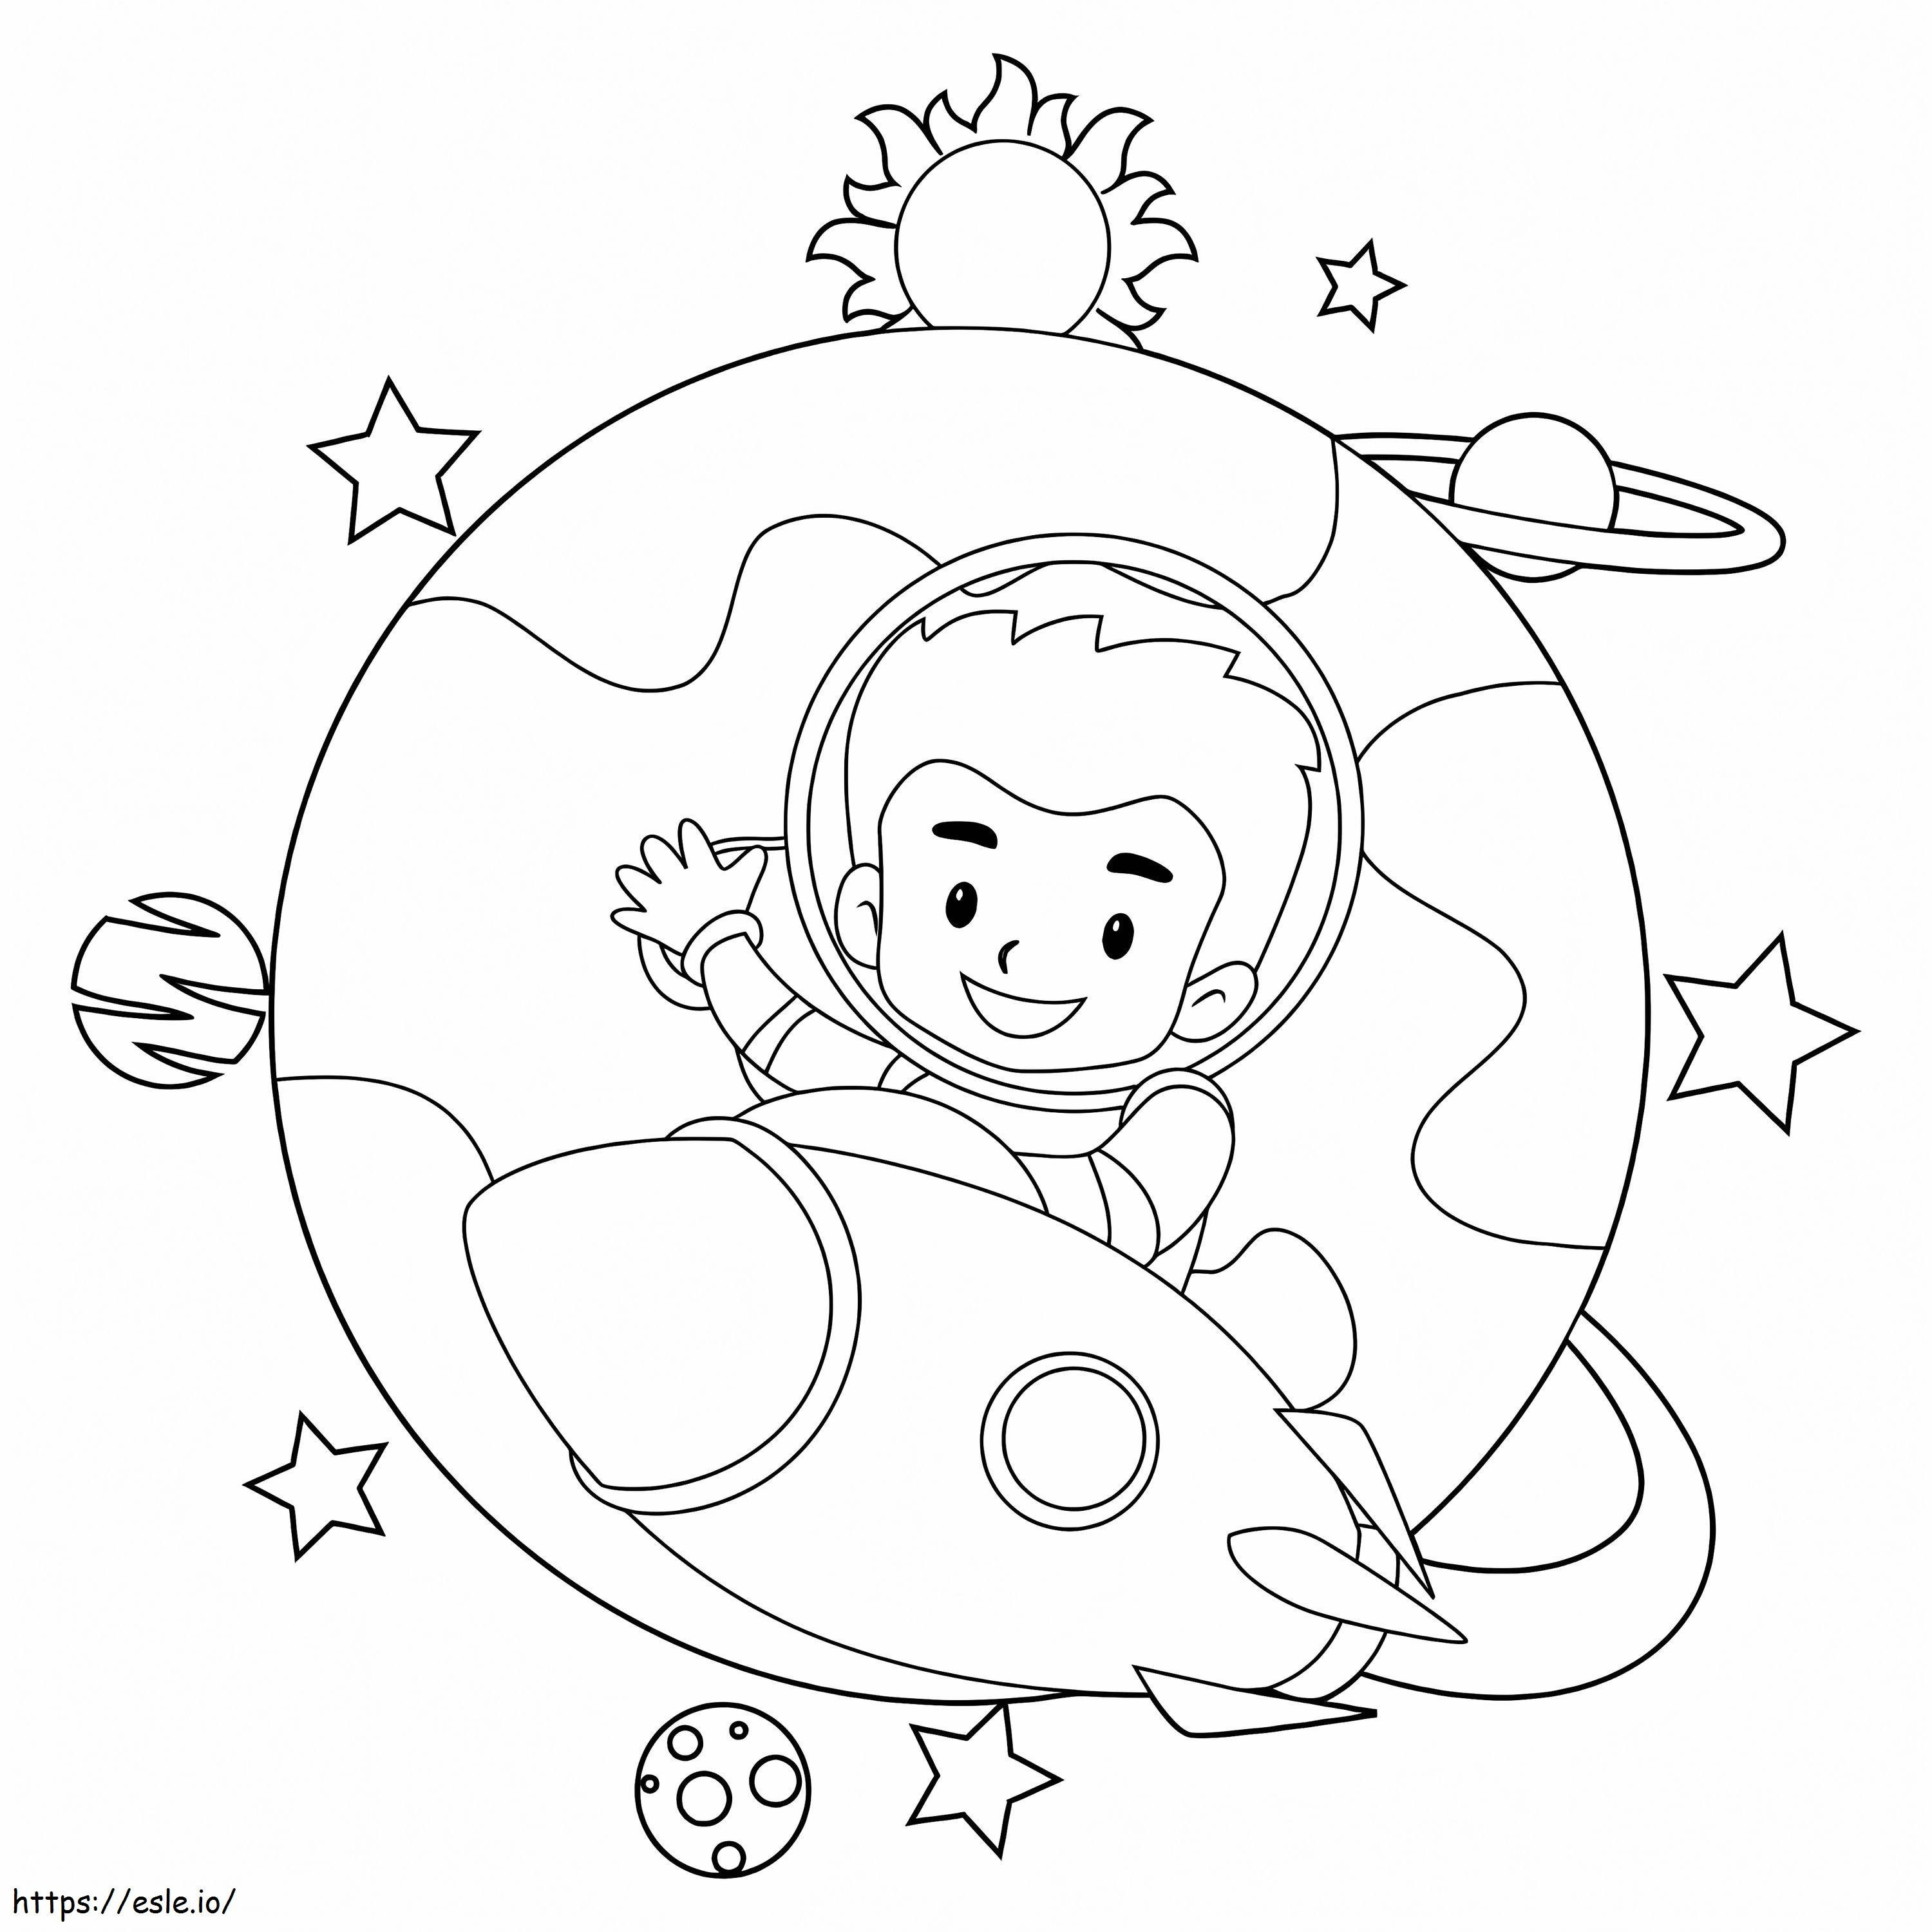 Uzaydan Gelen Çocuk Astronotlar boyama